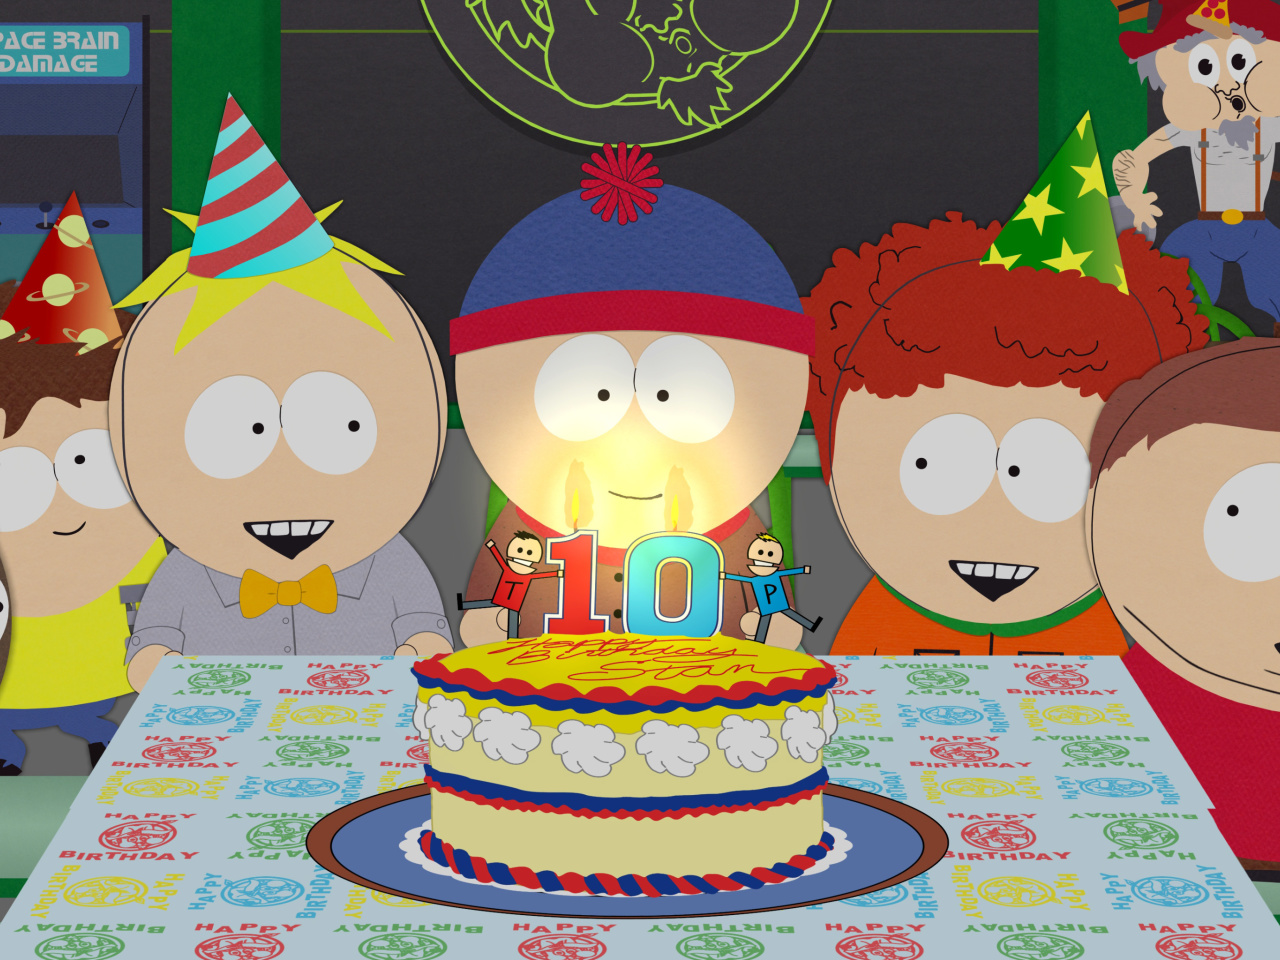 Das South Park Season 15 Stans Party Wallpaper 1280x960